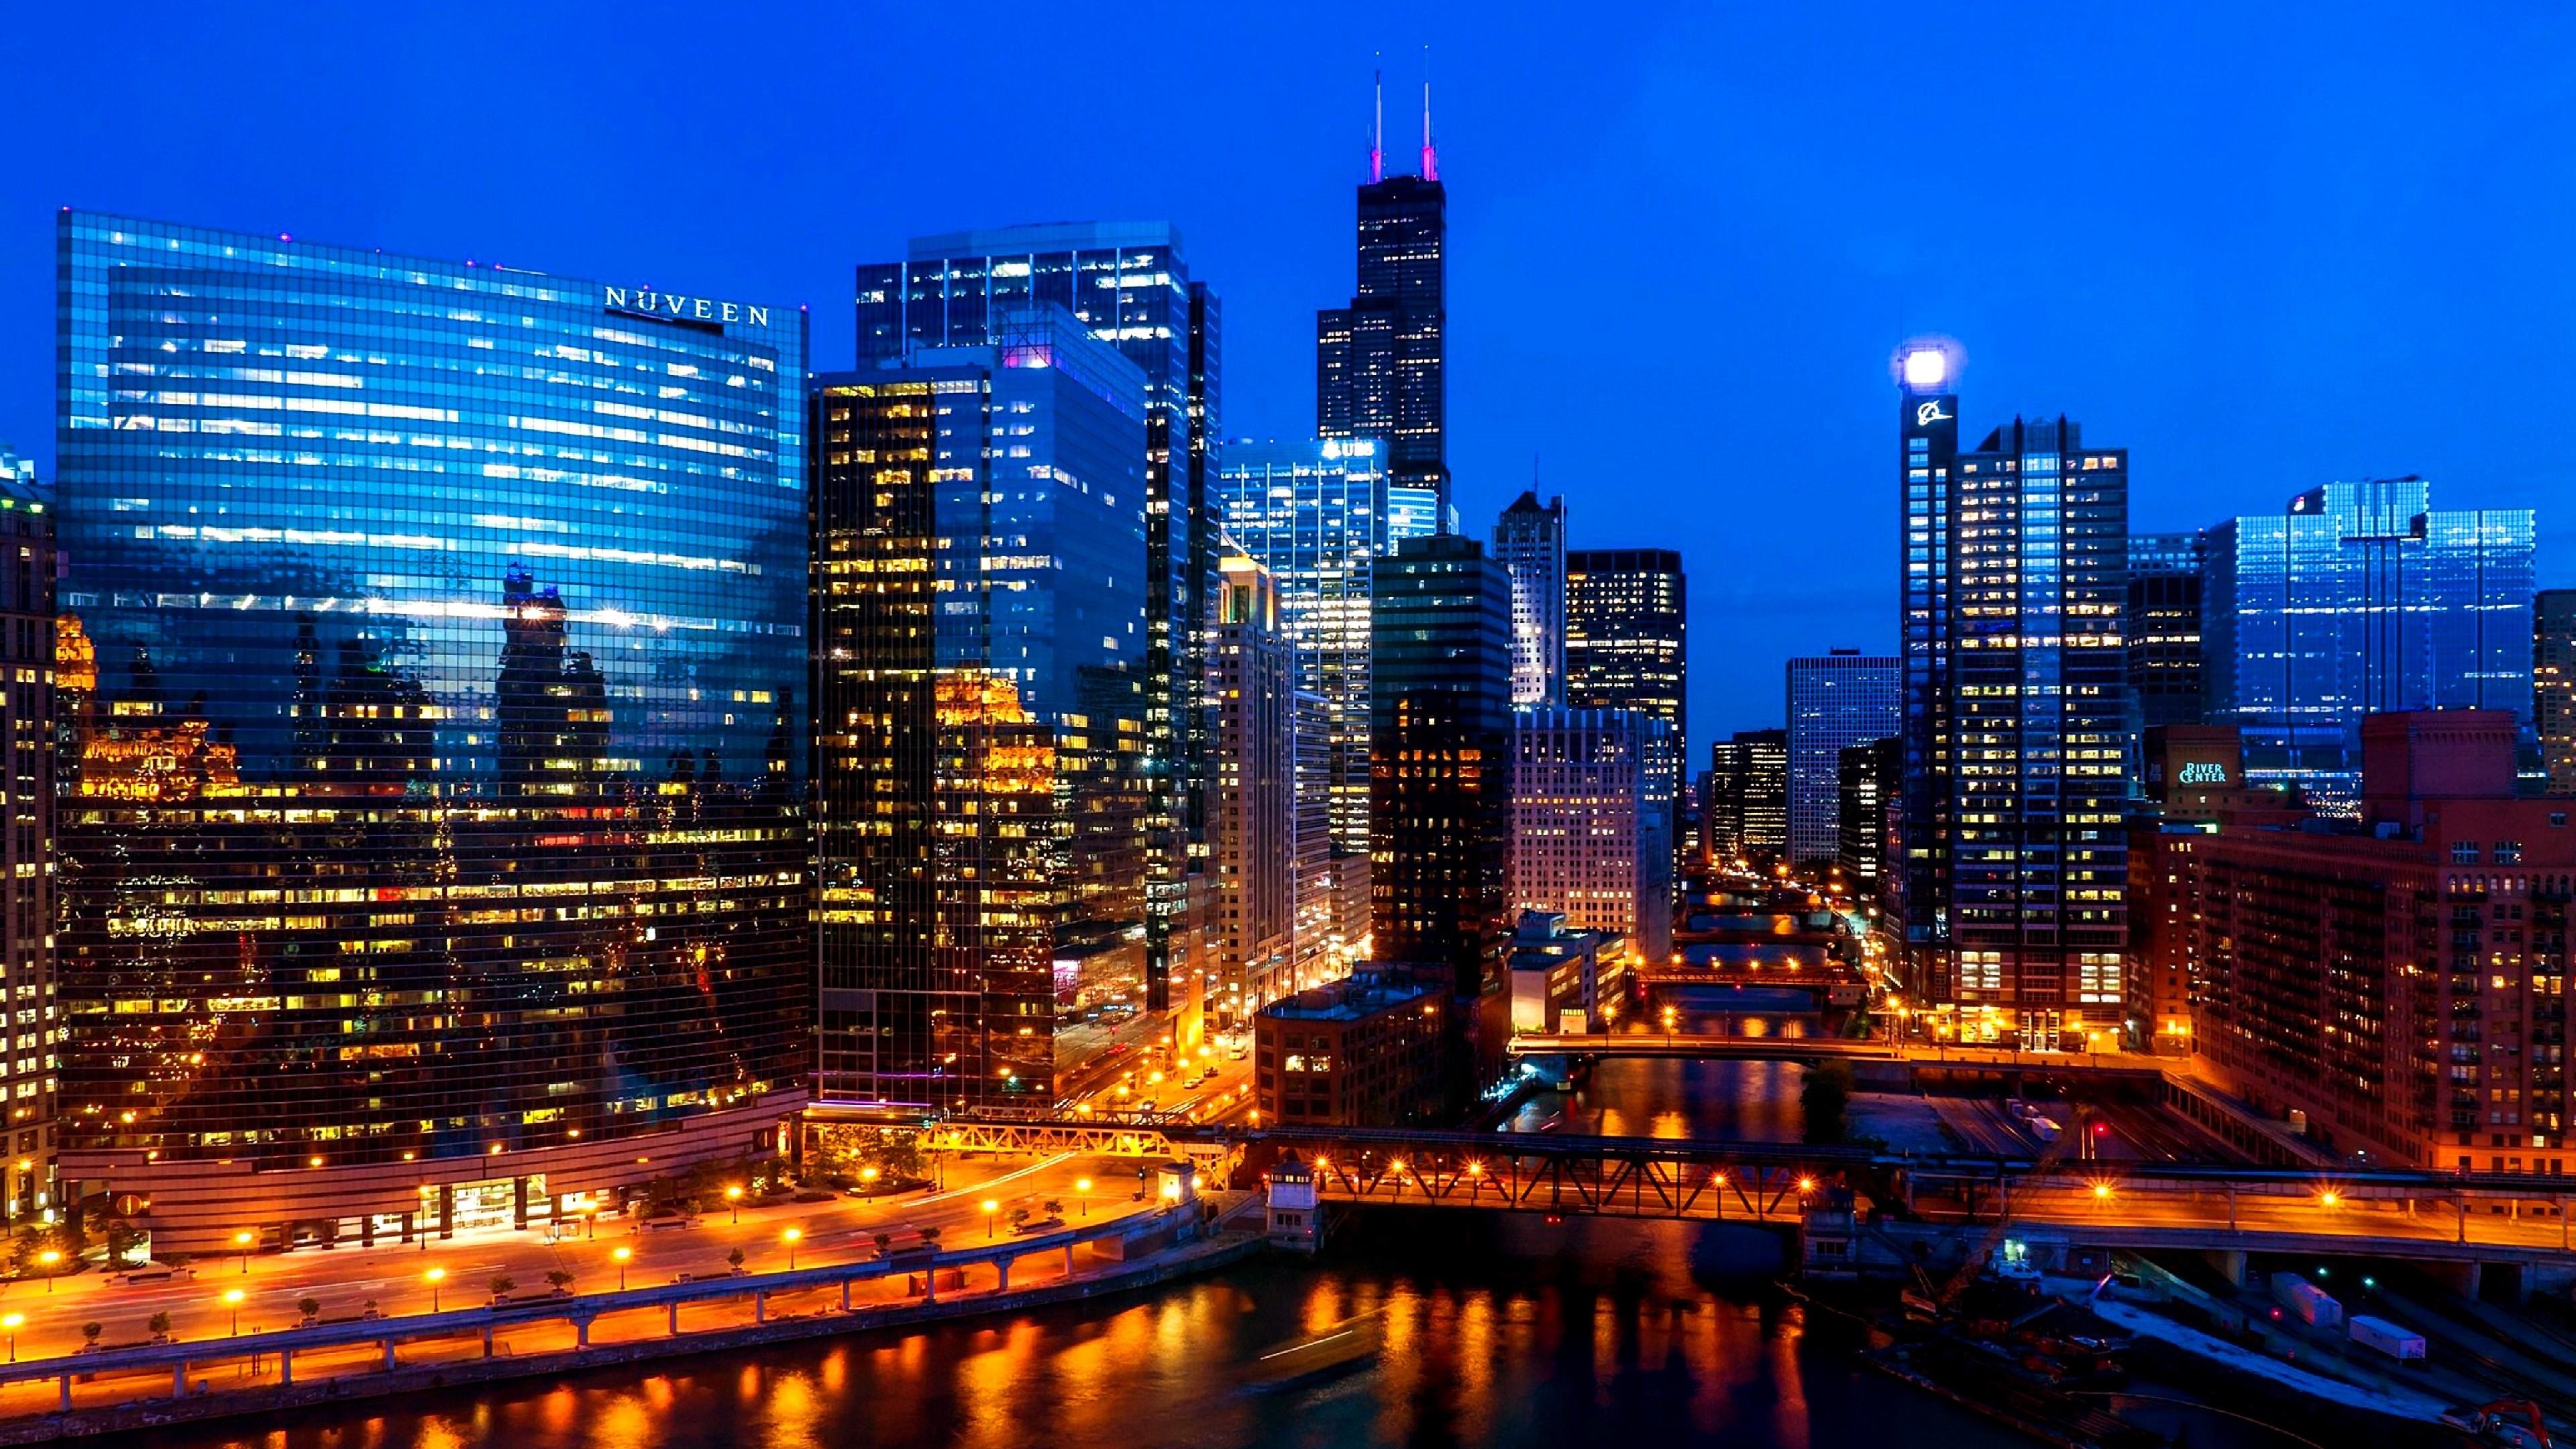 Chicago: The center of the Chicago metropolitan area, Urban area. 3840x2160 4K Wallpaper.